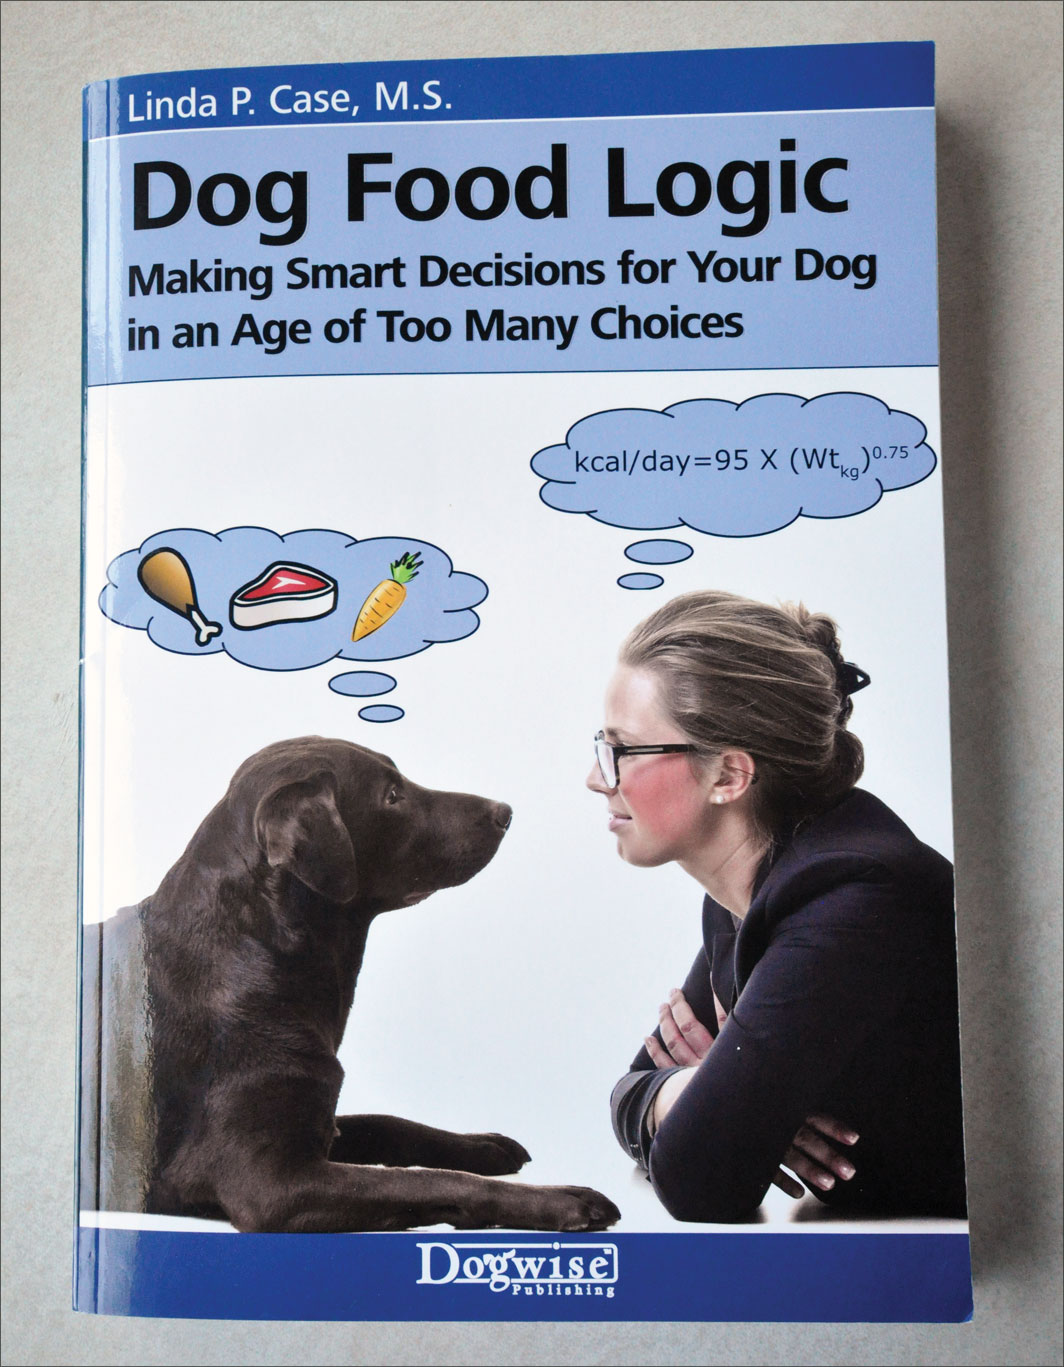 Dog Food Logic by Linda P. Case